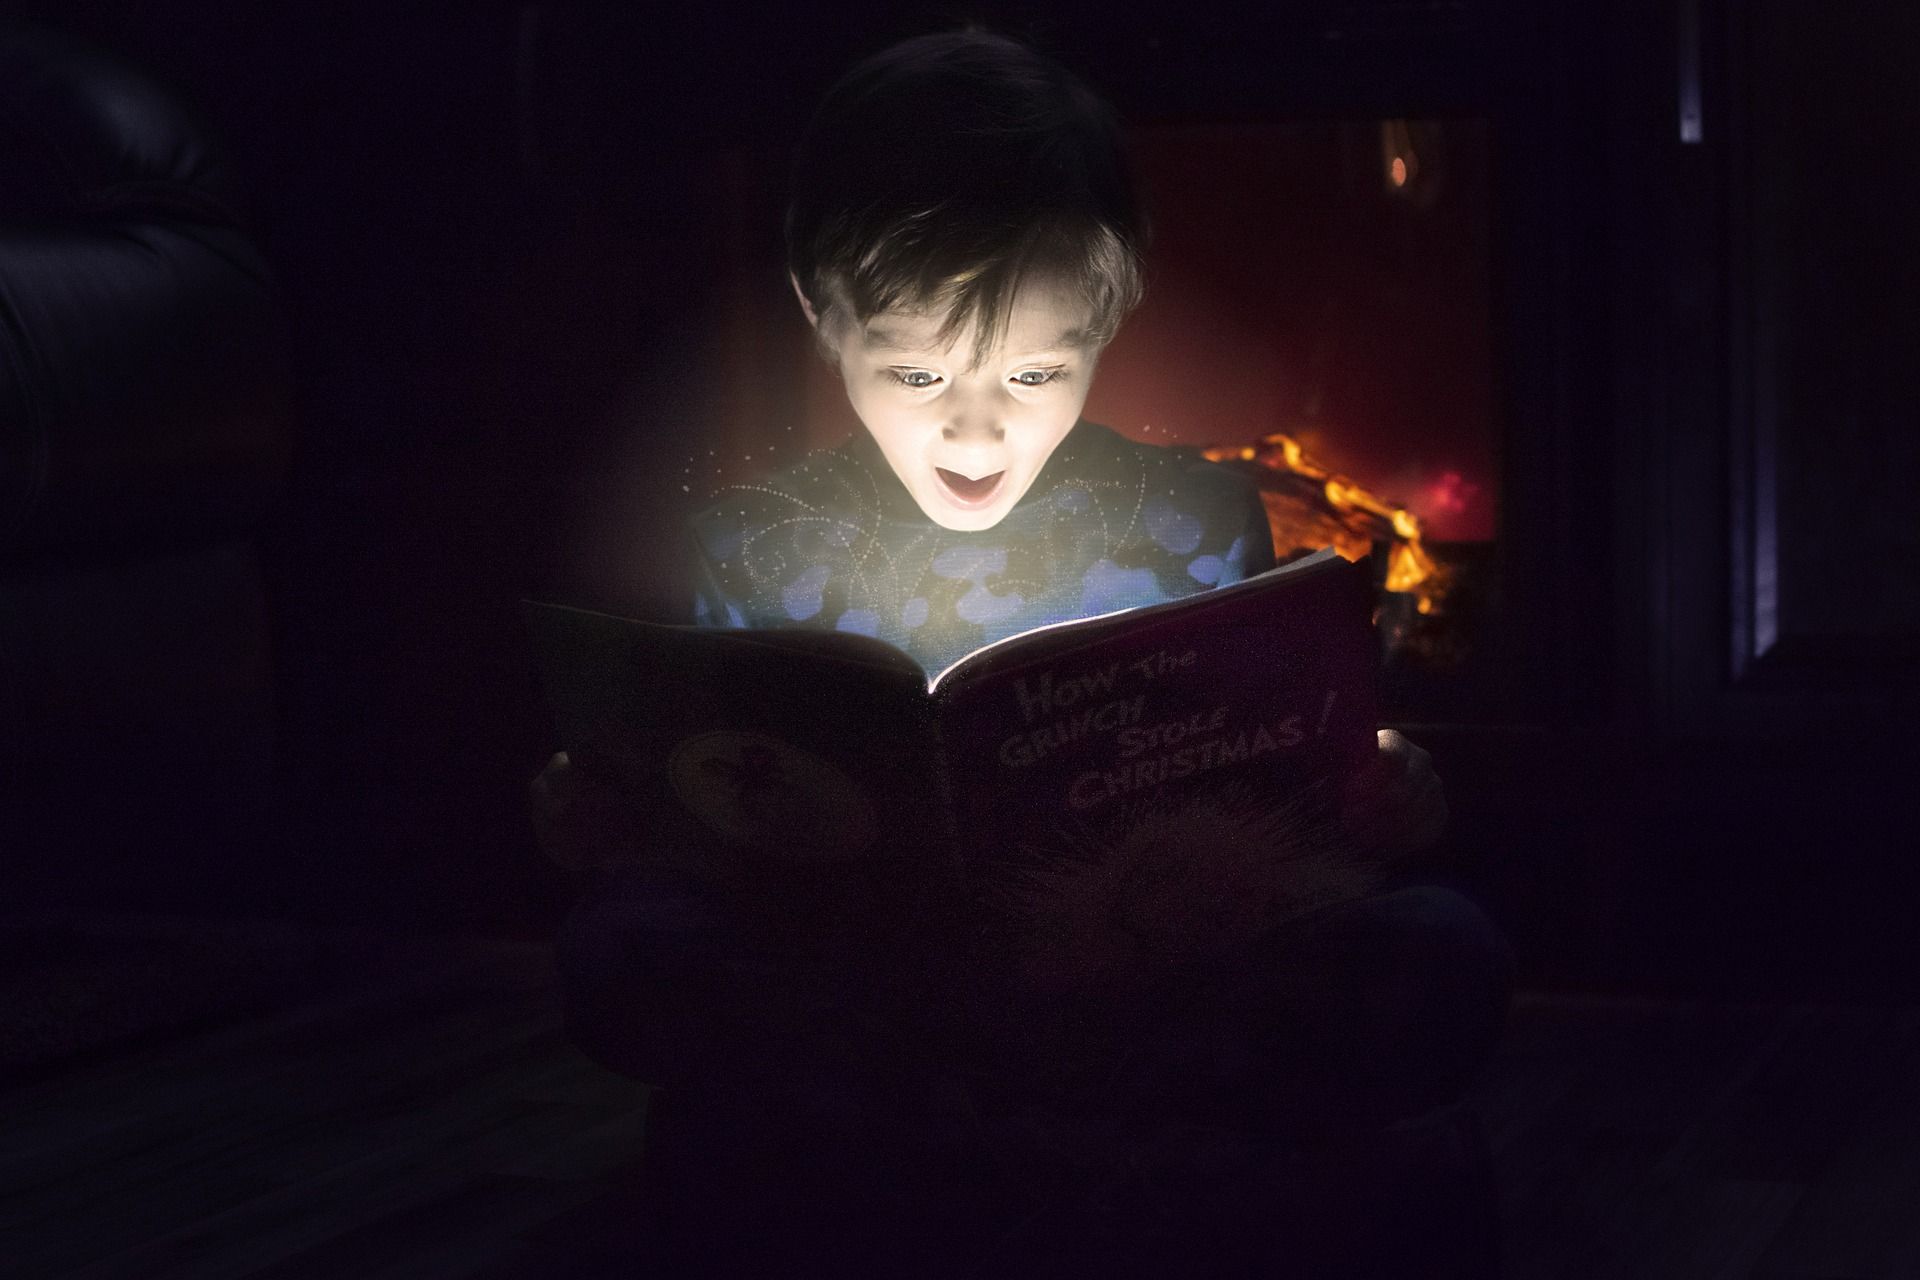 un enfant émerveillé lors d'une lecture - Image par saralcassidy de https://pixabay.com/fr/photos/en-train-de-lire-surpris-3969956/